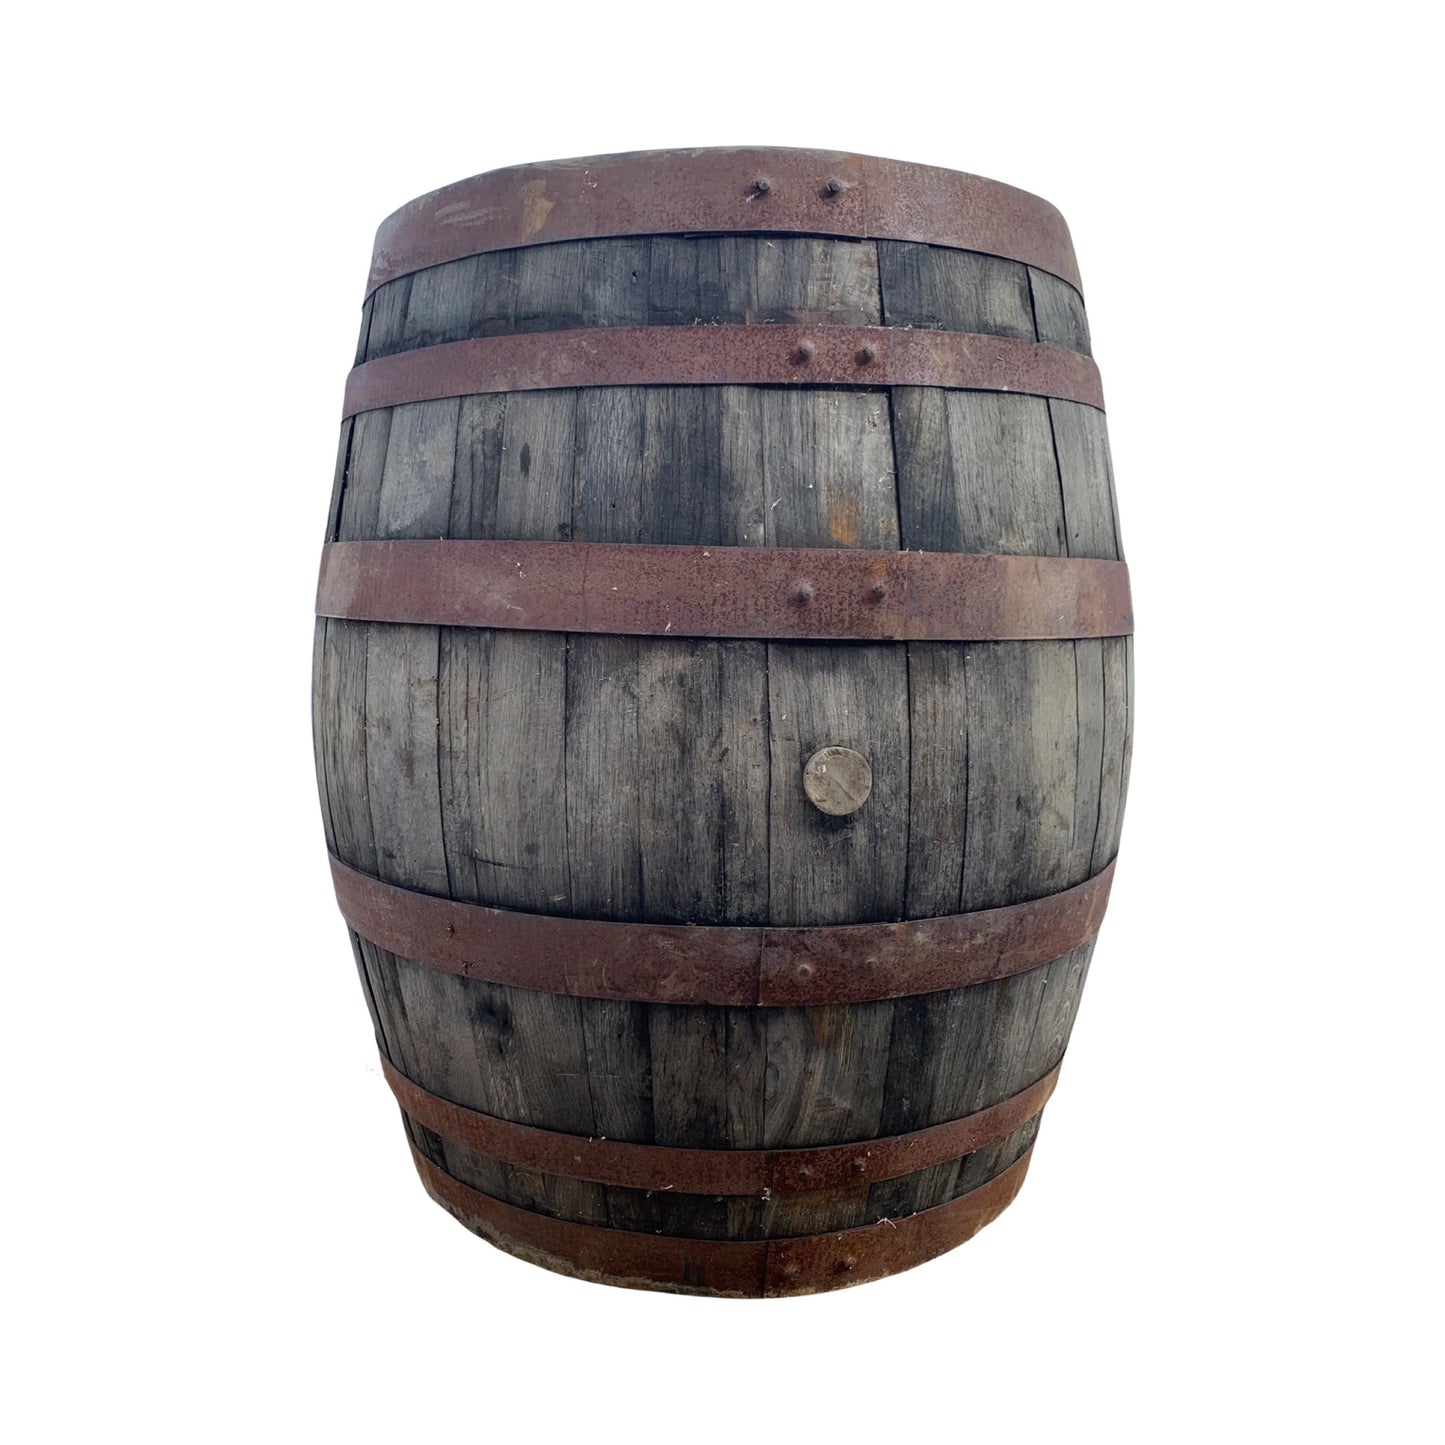 XL whiskey barrel